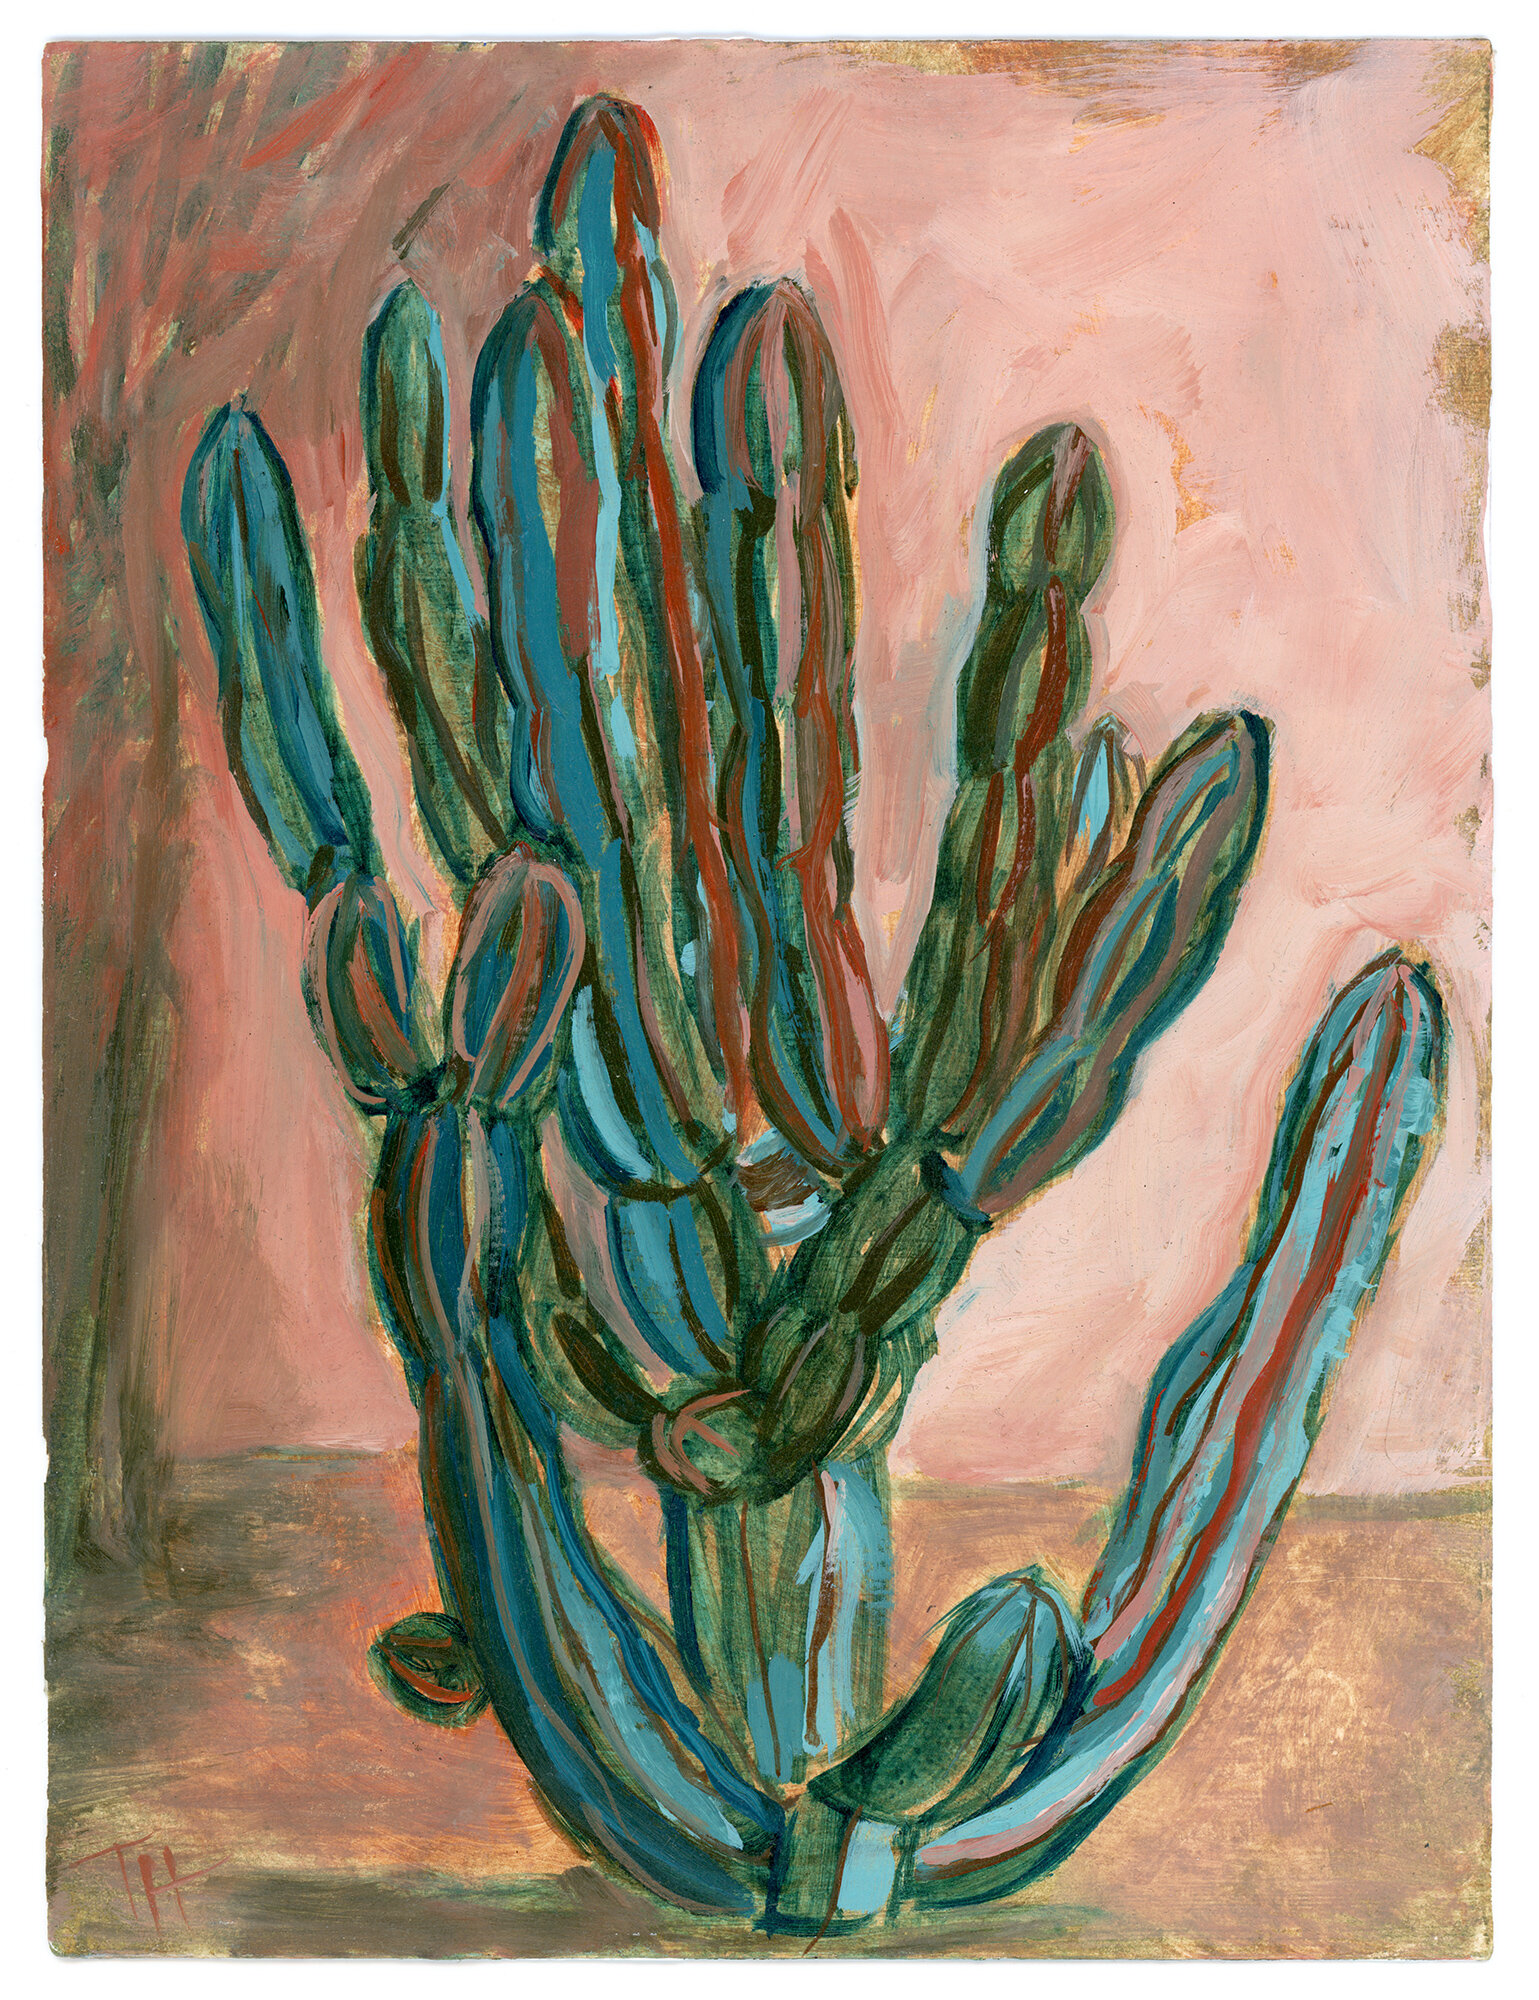  San Antonio Cactus, 2019. 8x6 in. Oil on paper, en plein air. 